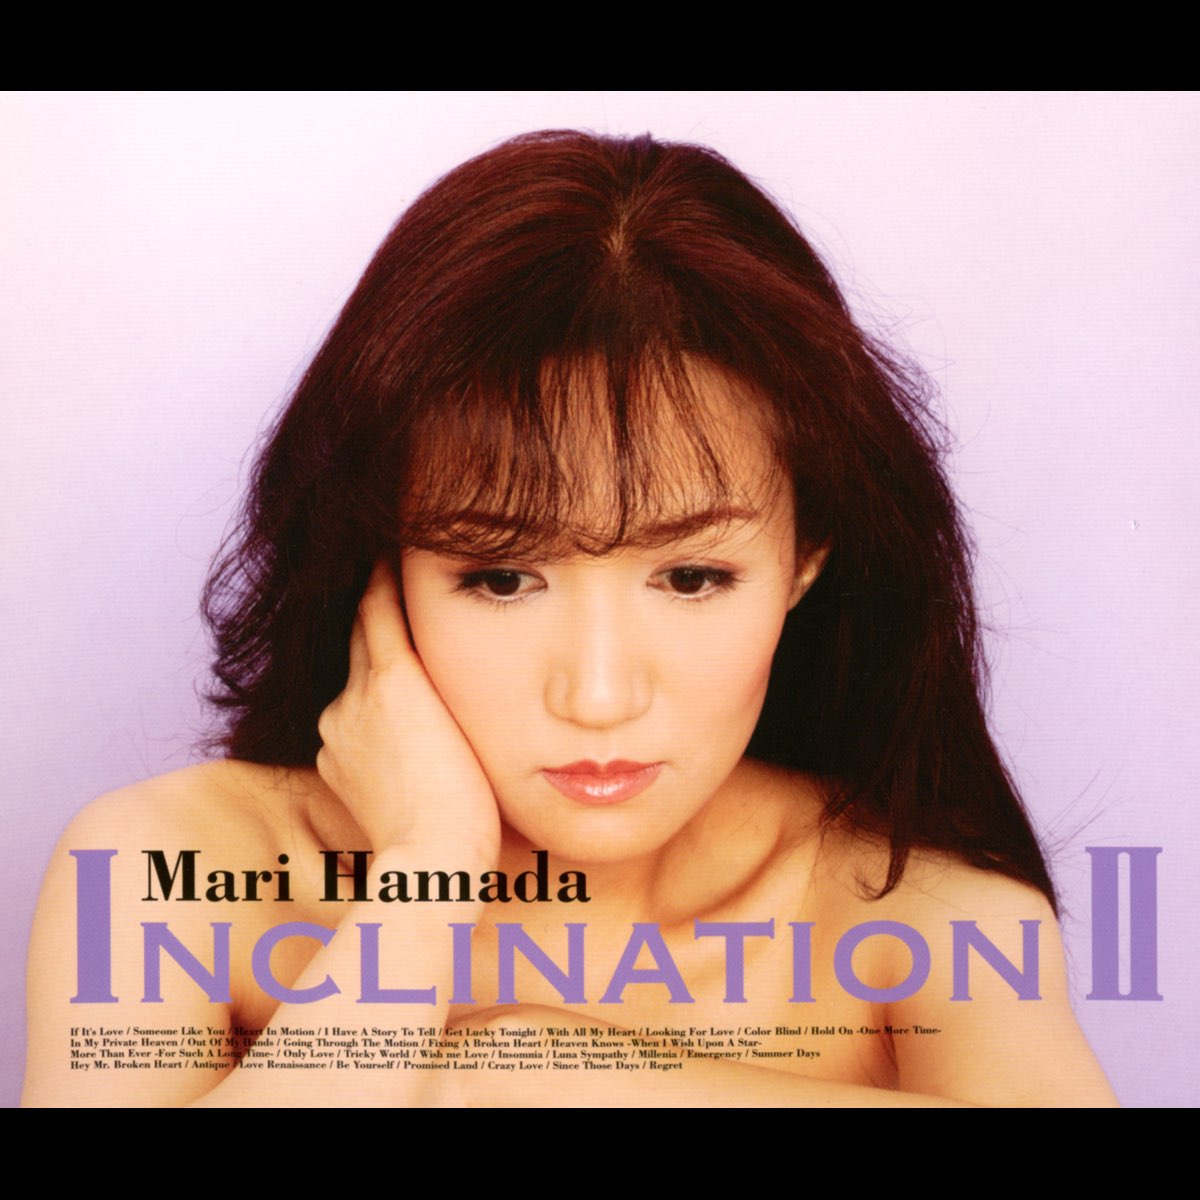 INCLINATION Ⅱ - 浜田麻里のアルバム - Apple Music